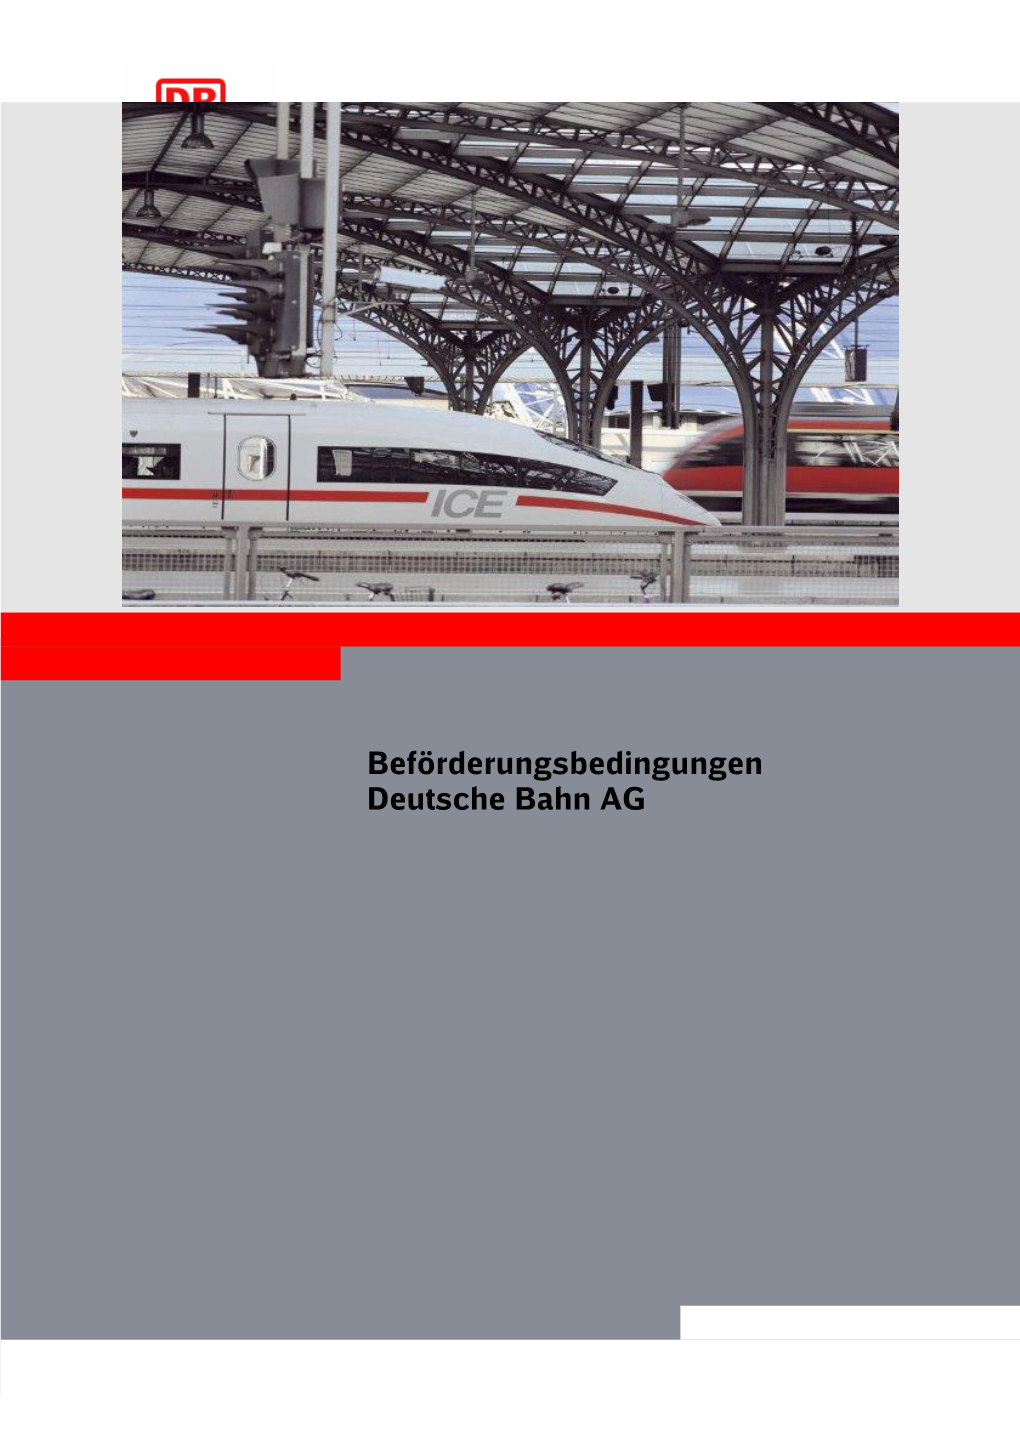 Beförderungsbedingungen Deutsche Bahn AG